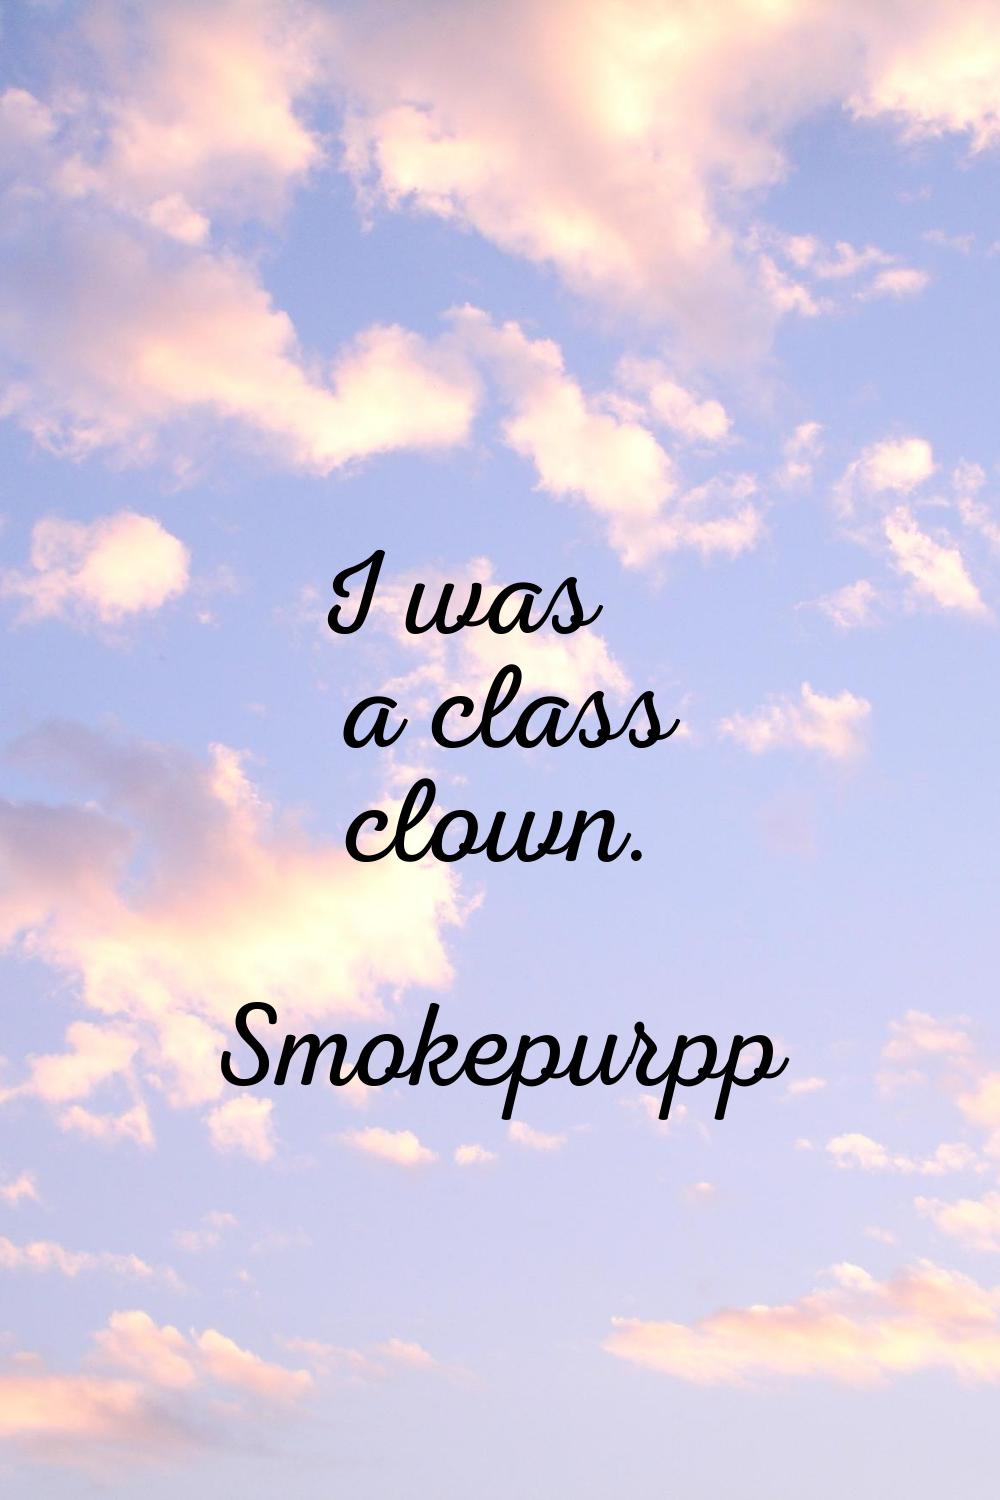 I was a class clown.